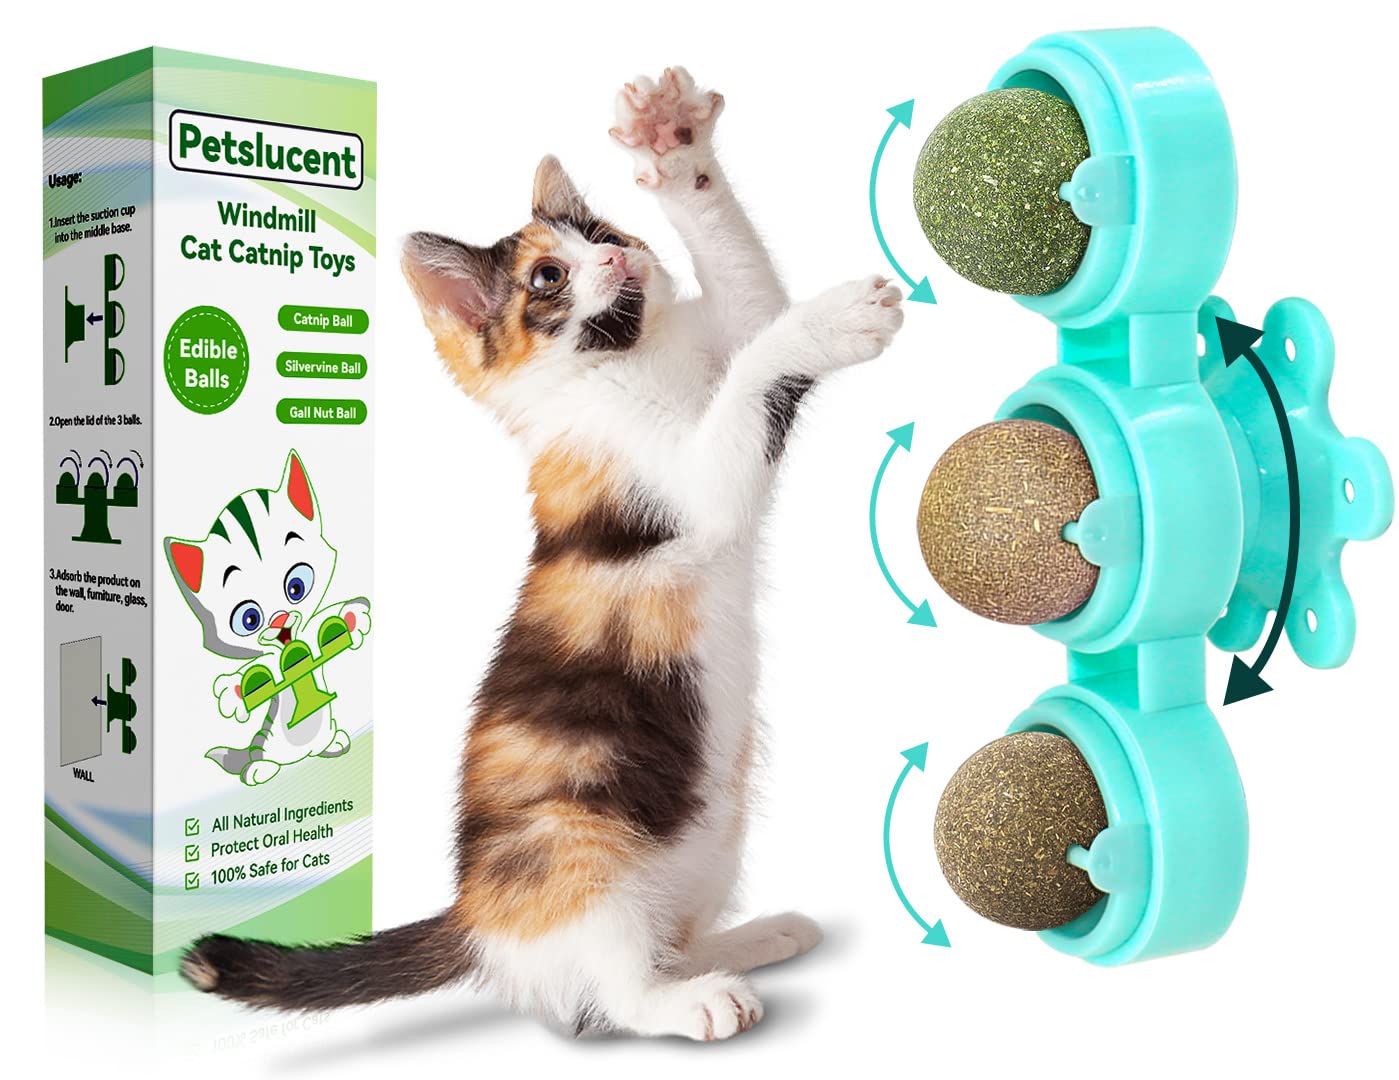 Catnip dispenser for cat toys - Scent setters